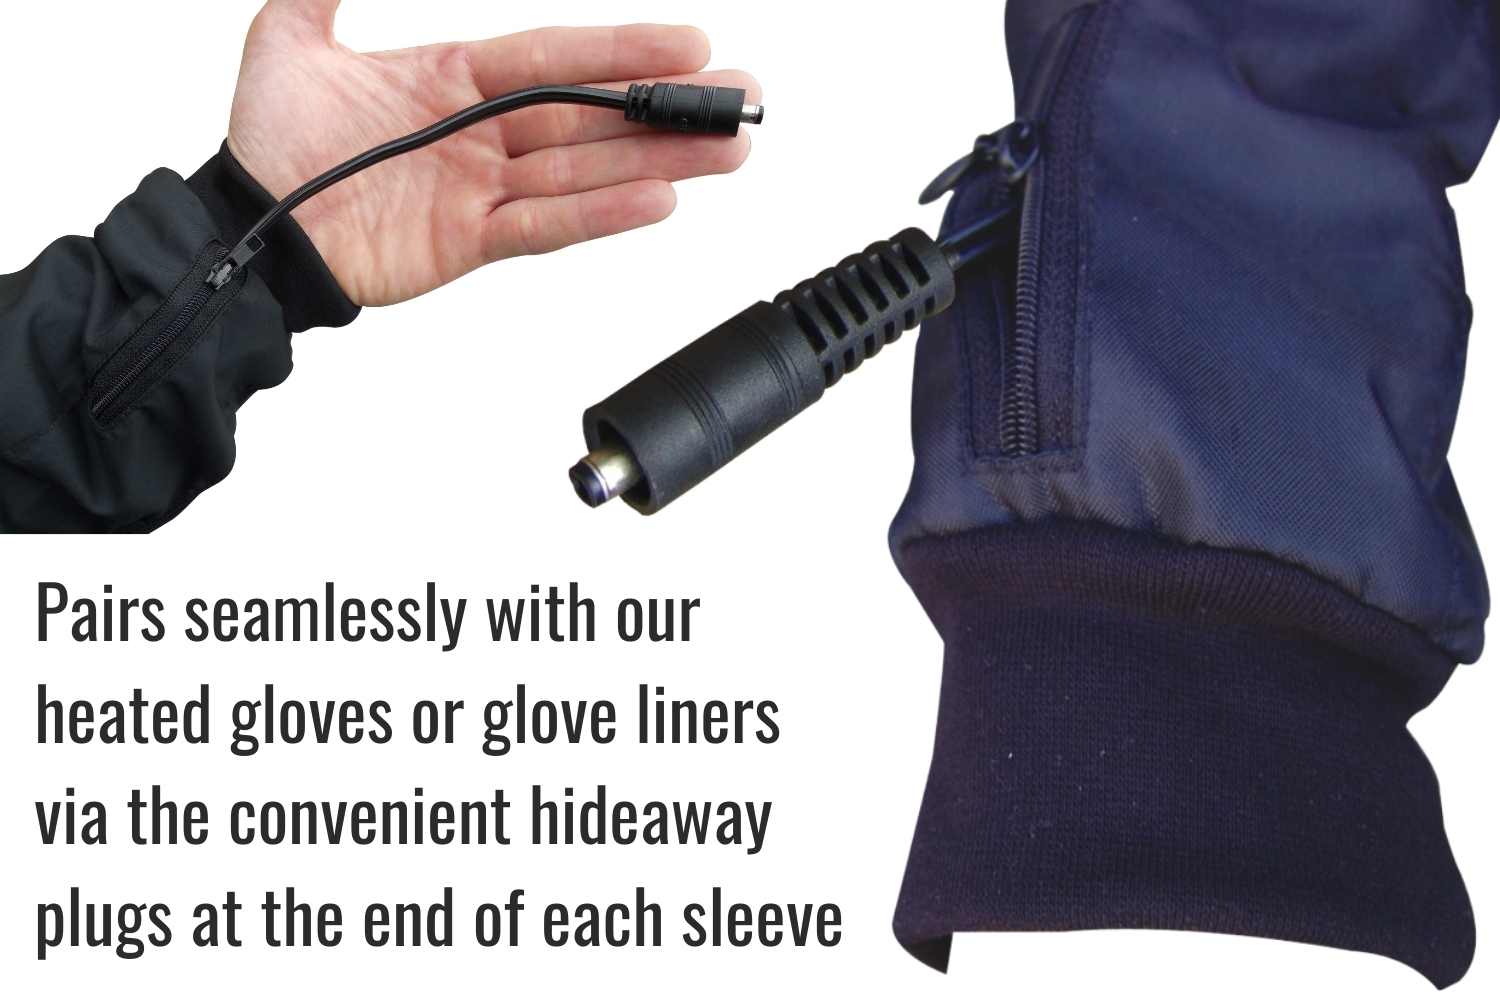 Hideaway plugs of jacket liner